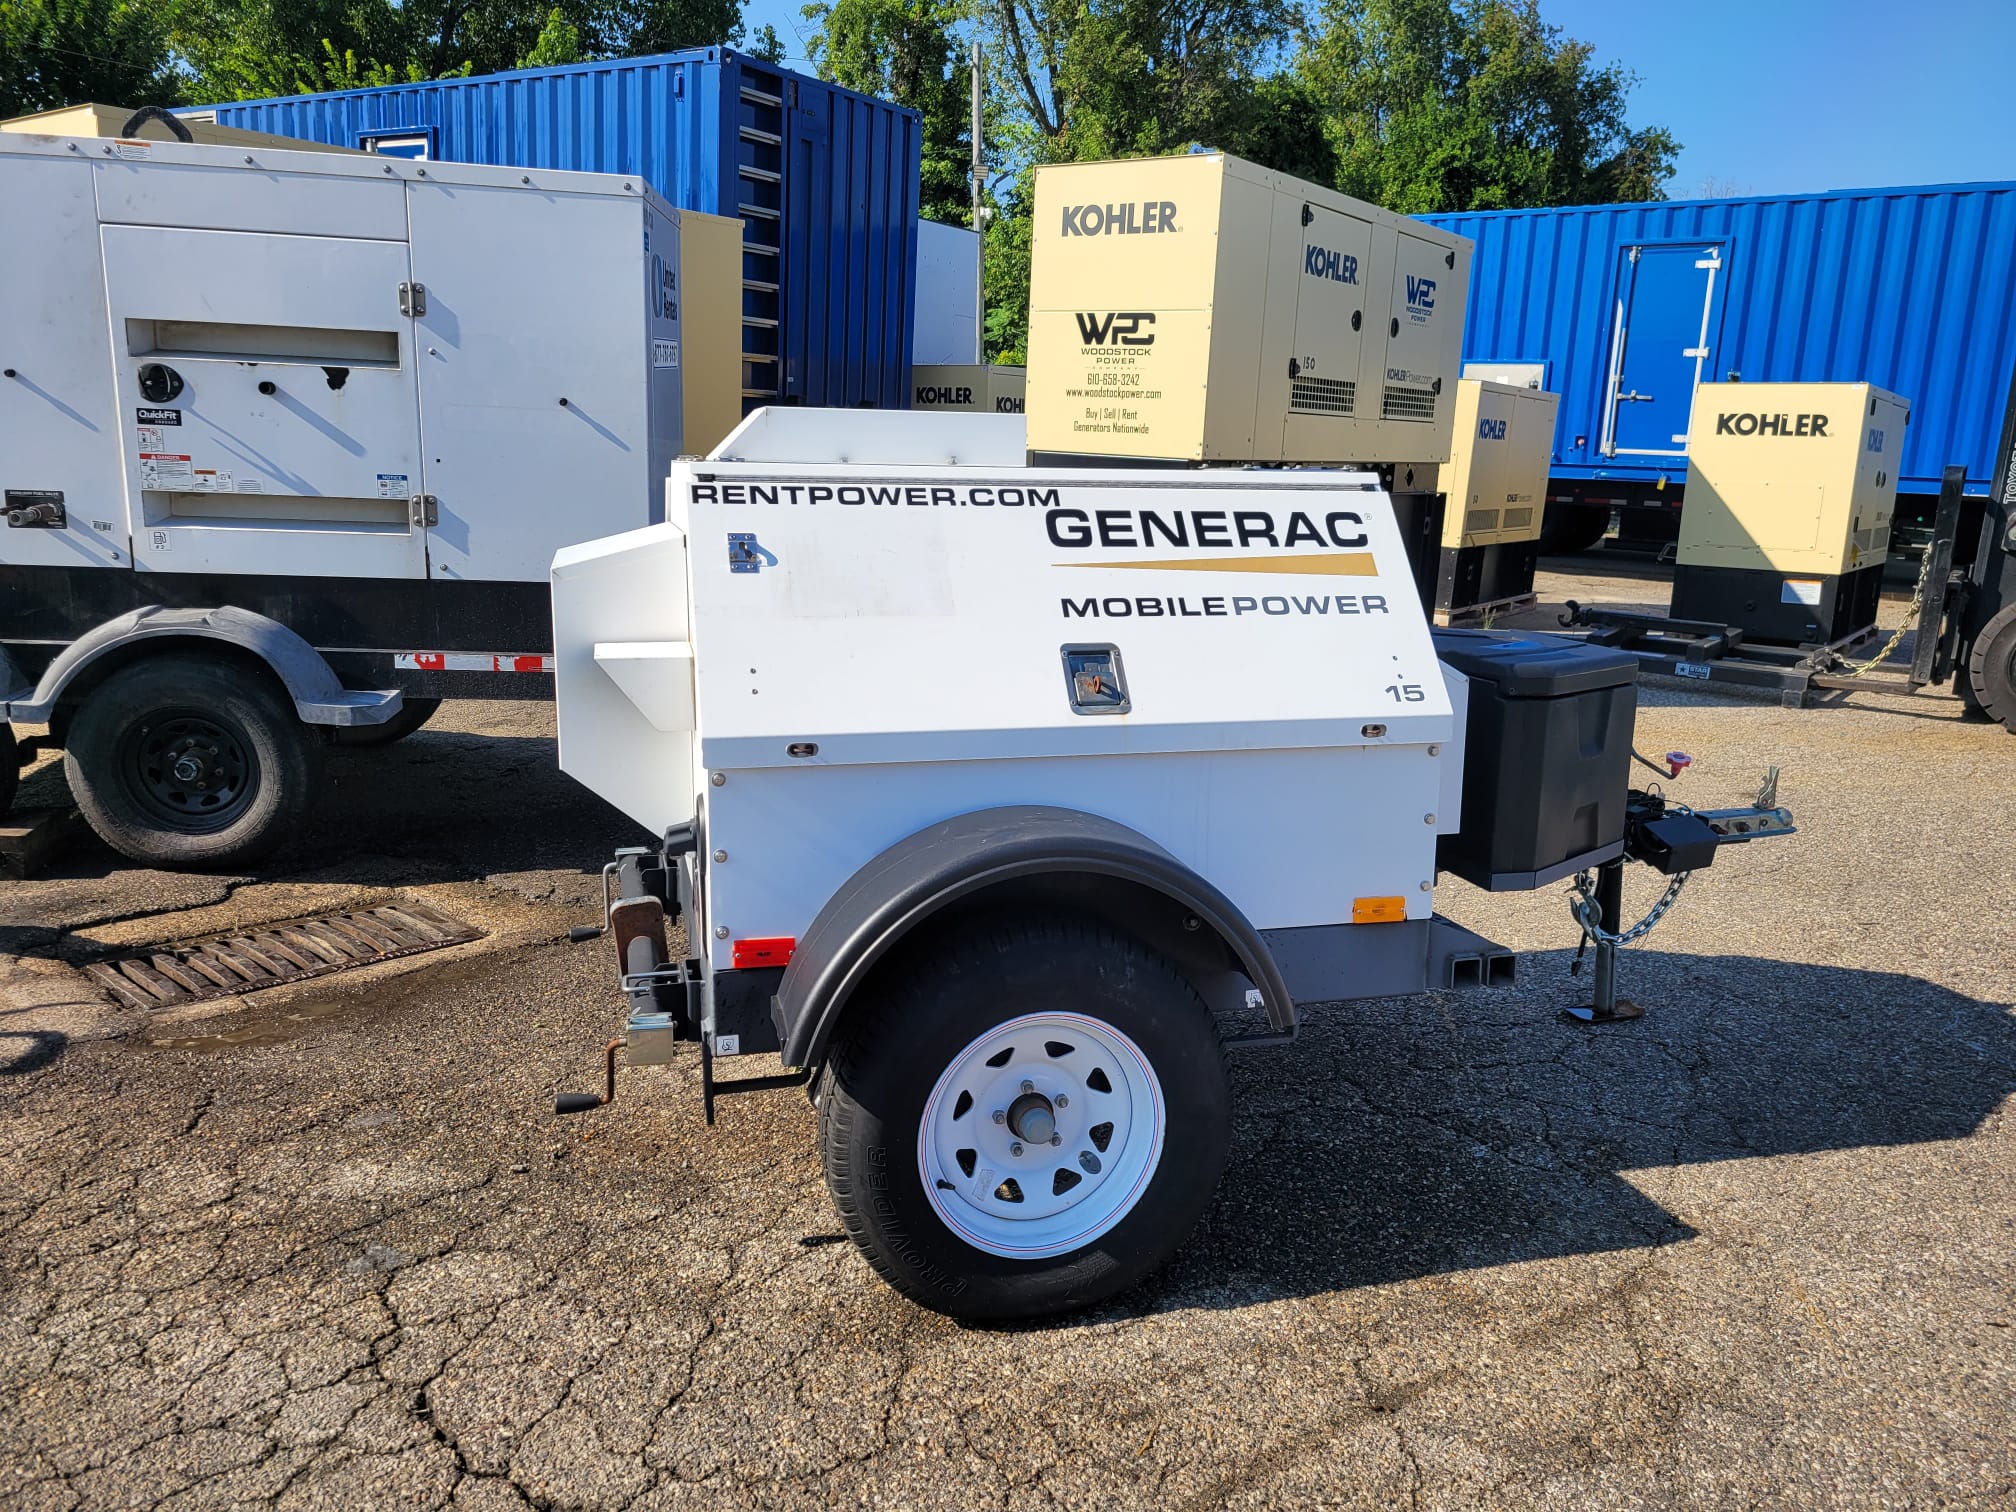 Used 13 kW Generac MLG15 Portable Diesel Generator – EPA Tier 4i